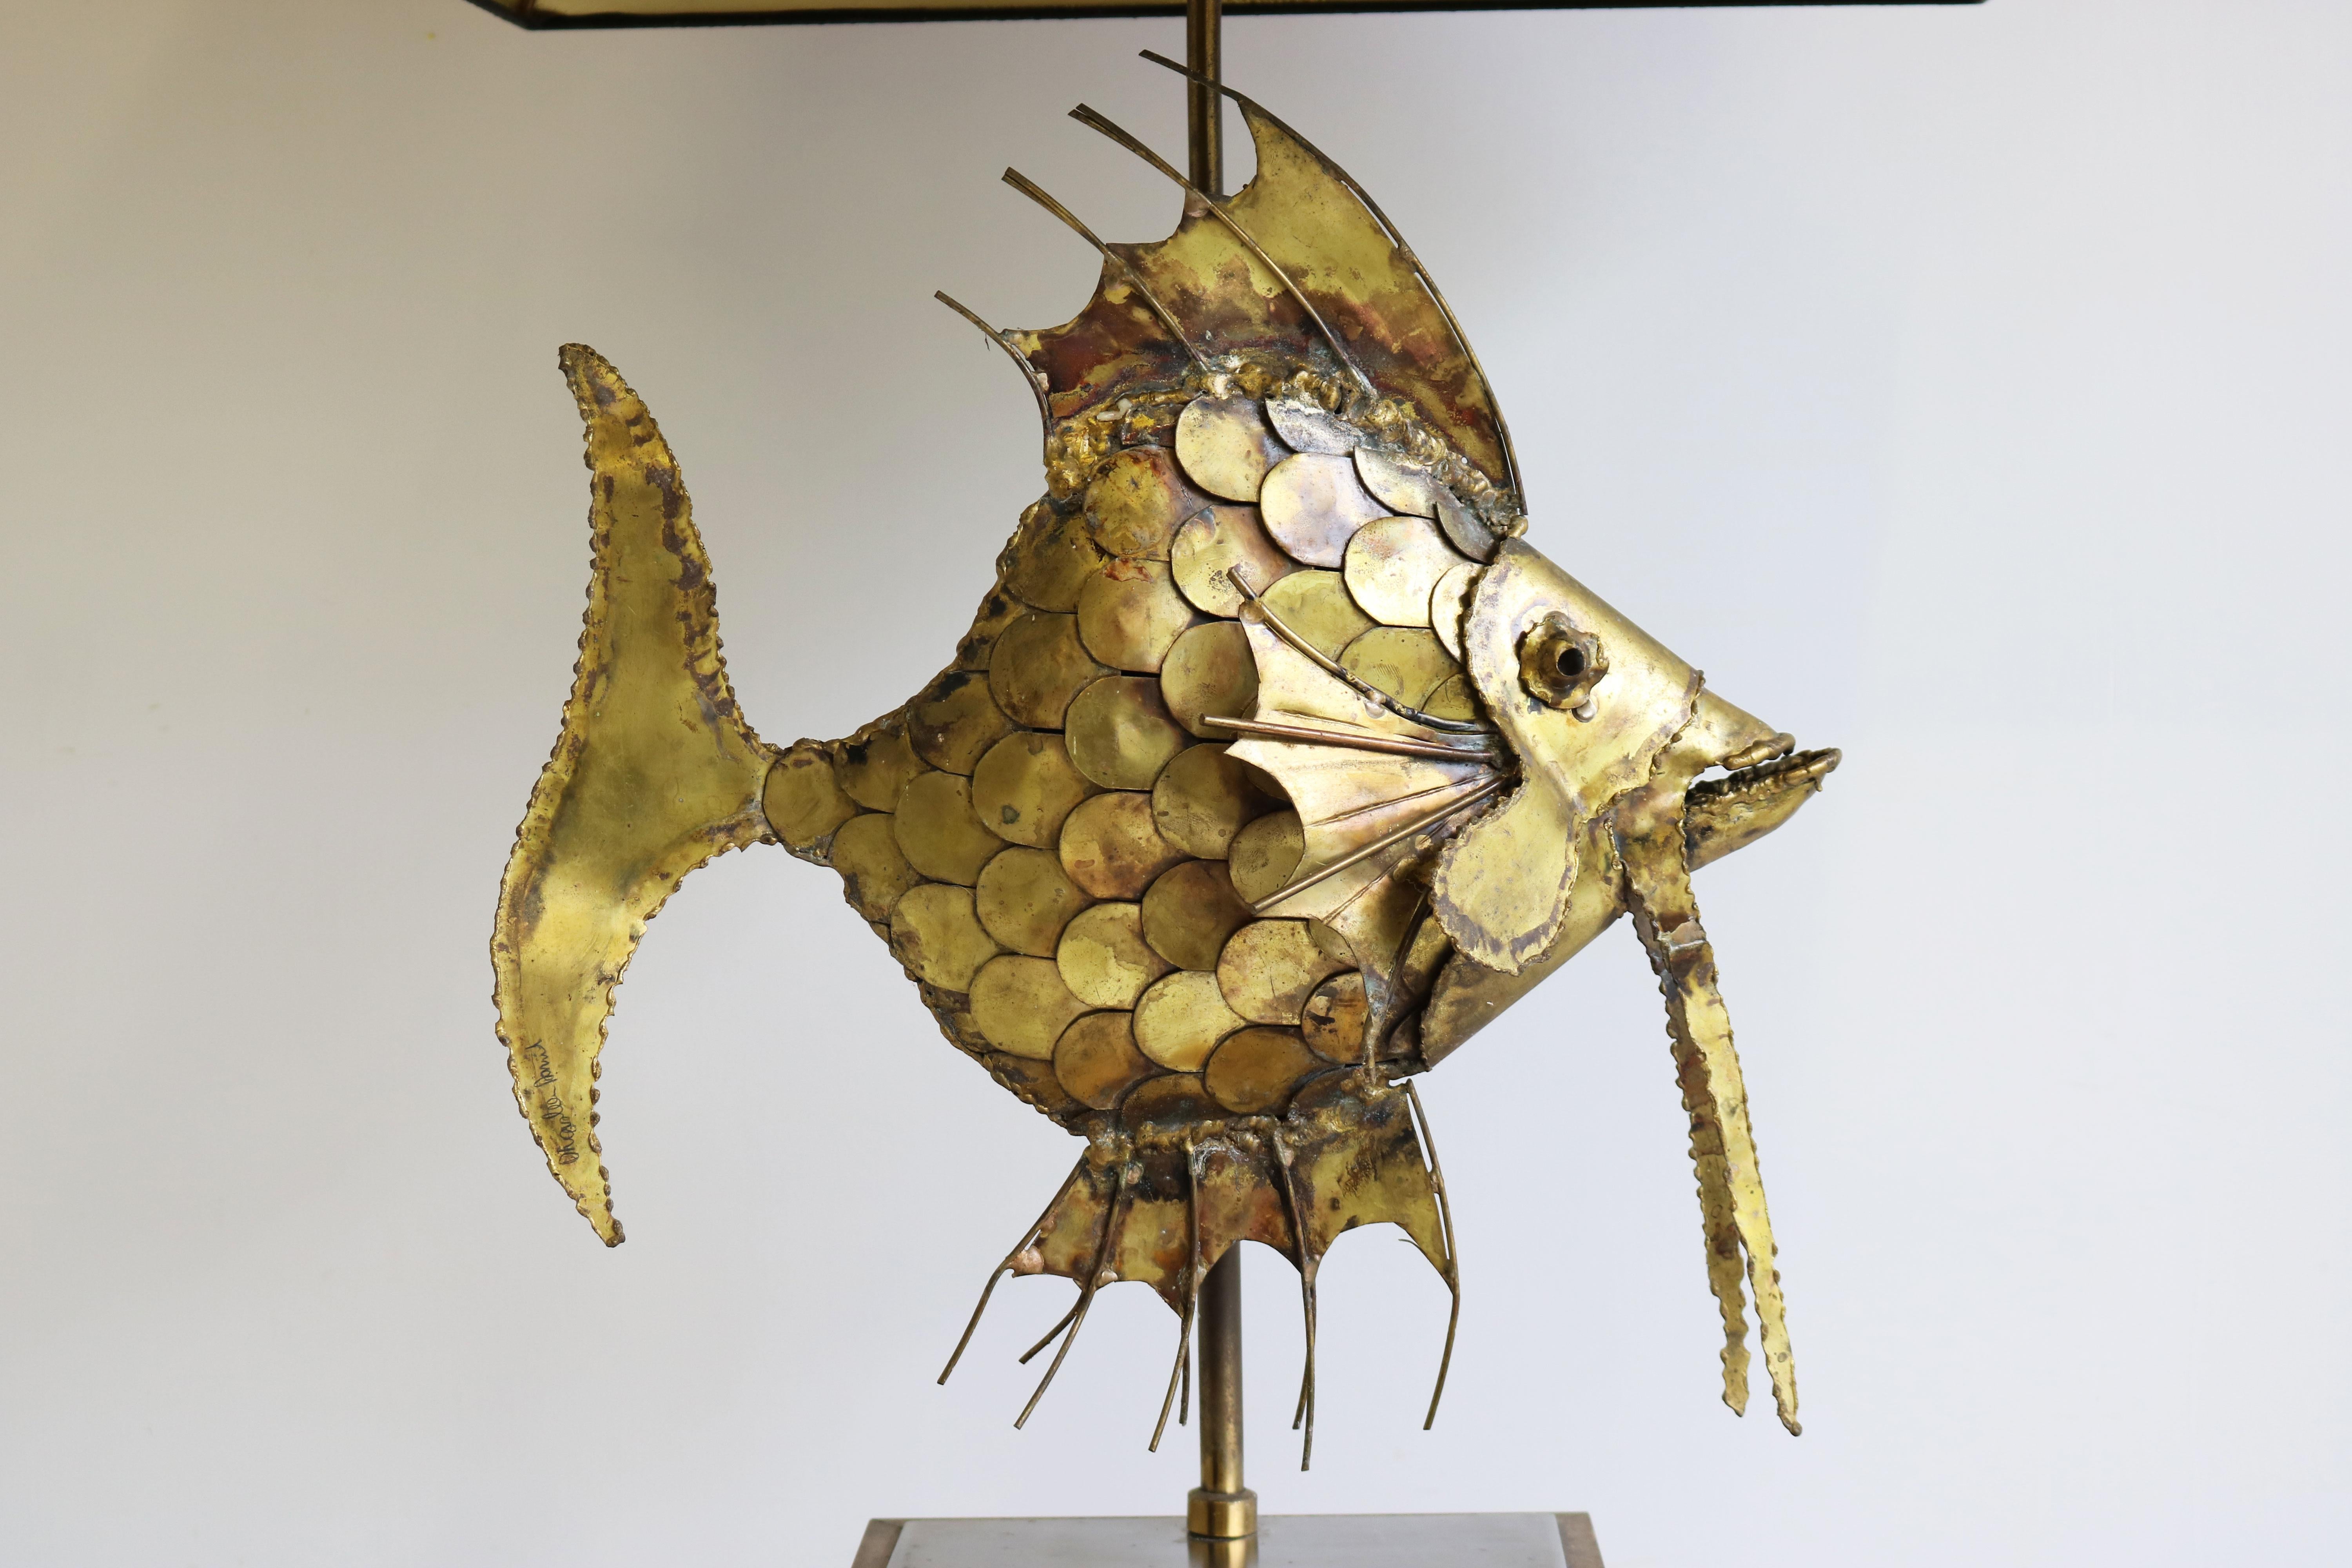 Magnifique sculpture de poisson de style brutaliste en laiton par le célèbre artiste belge Daniel d'haeseleer 1970 signé sur la queue par l'artiste.
Le poisson est très grand et a l'air magnifique, l'artisanat et l'attention aux détails sont